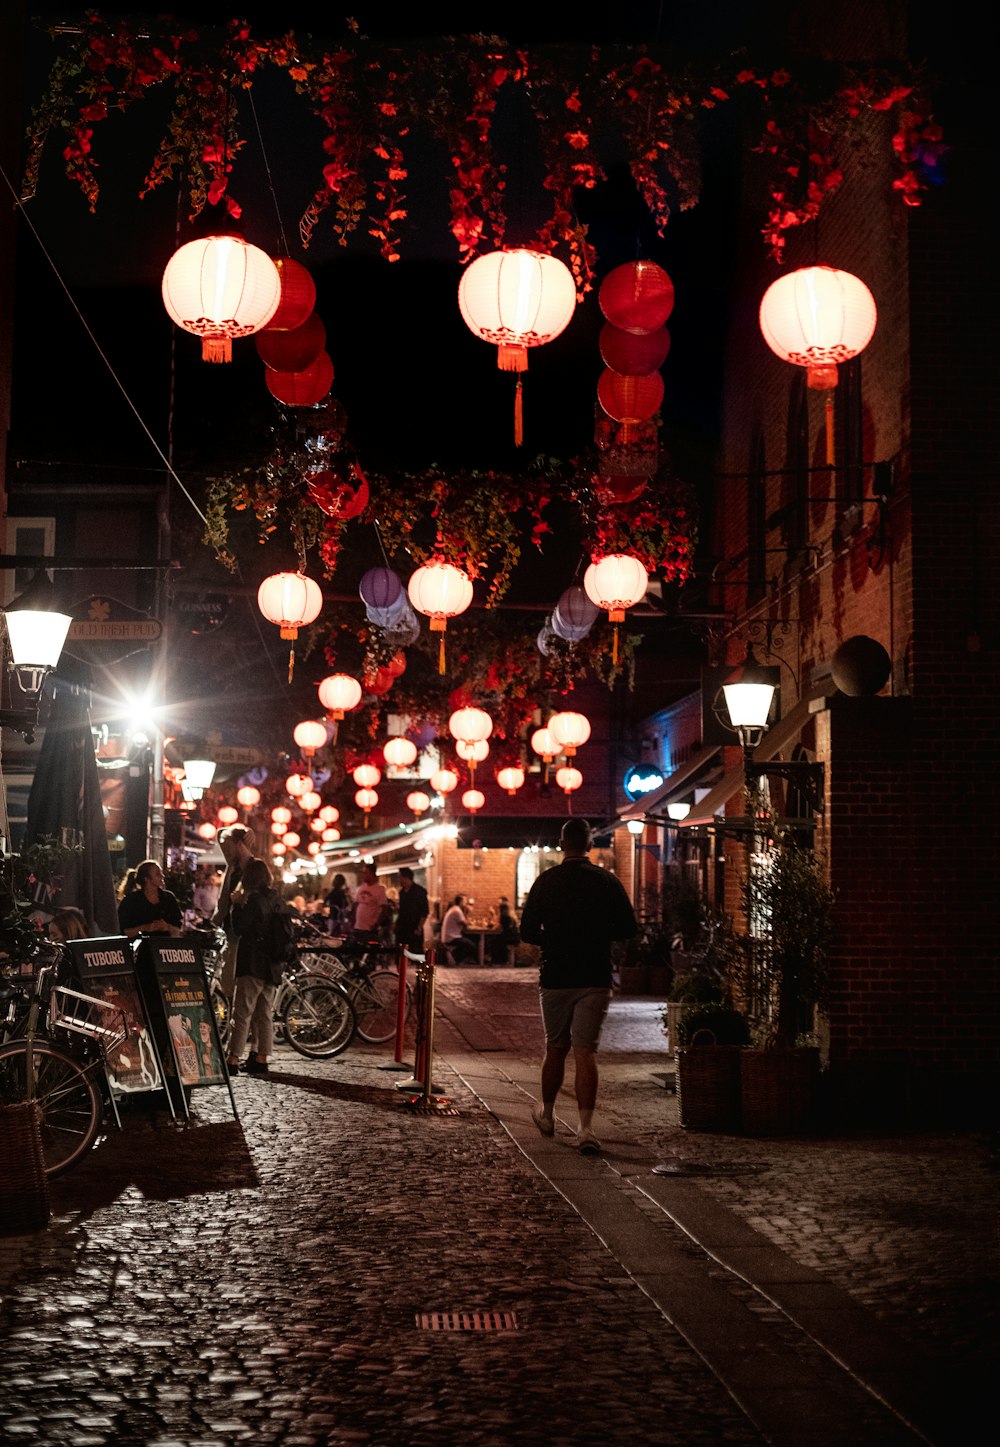 un groupe de personnes marchant sur un trottoir avec des lanternes du plafond